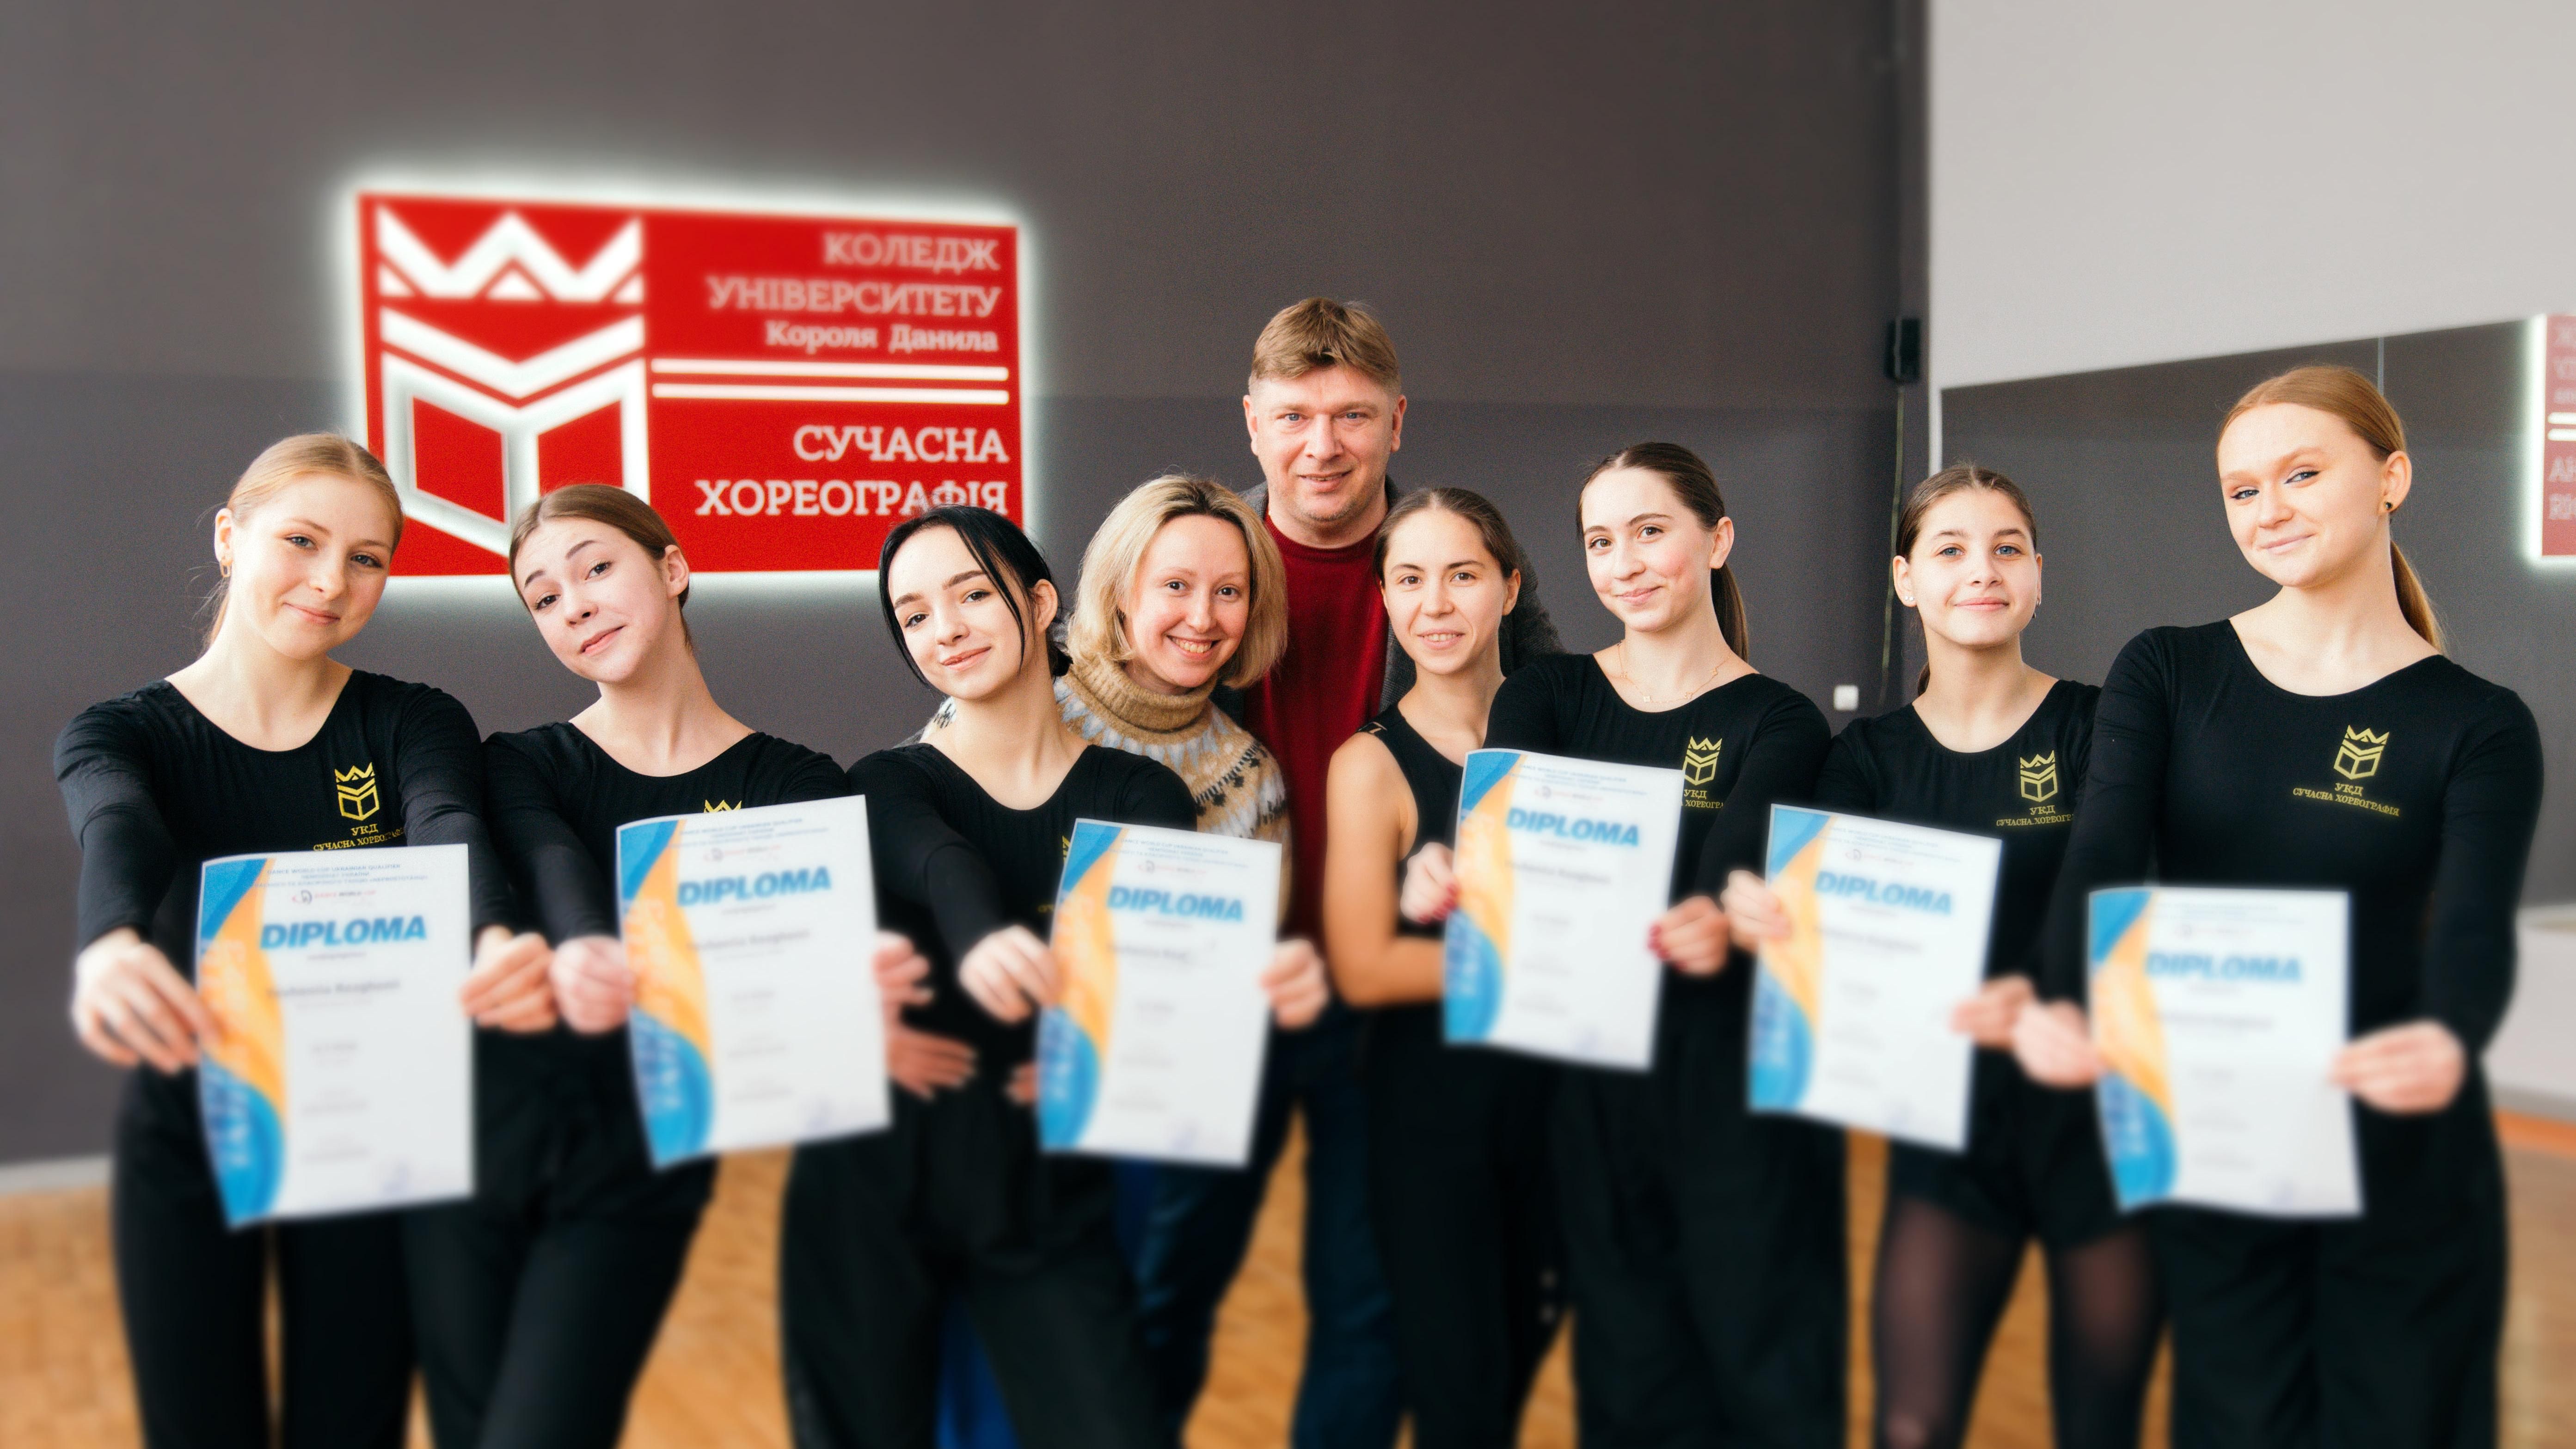 Студентки Фахового коледжу УКД спеціальності «Сучасна хореографія» стали переможцями національного відбору на світову першість «Dance World Cup»